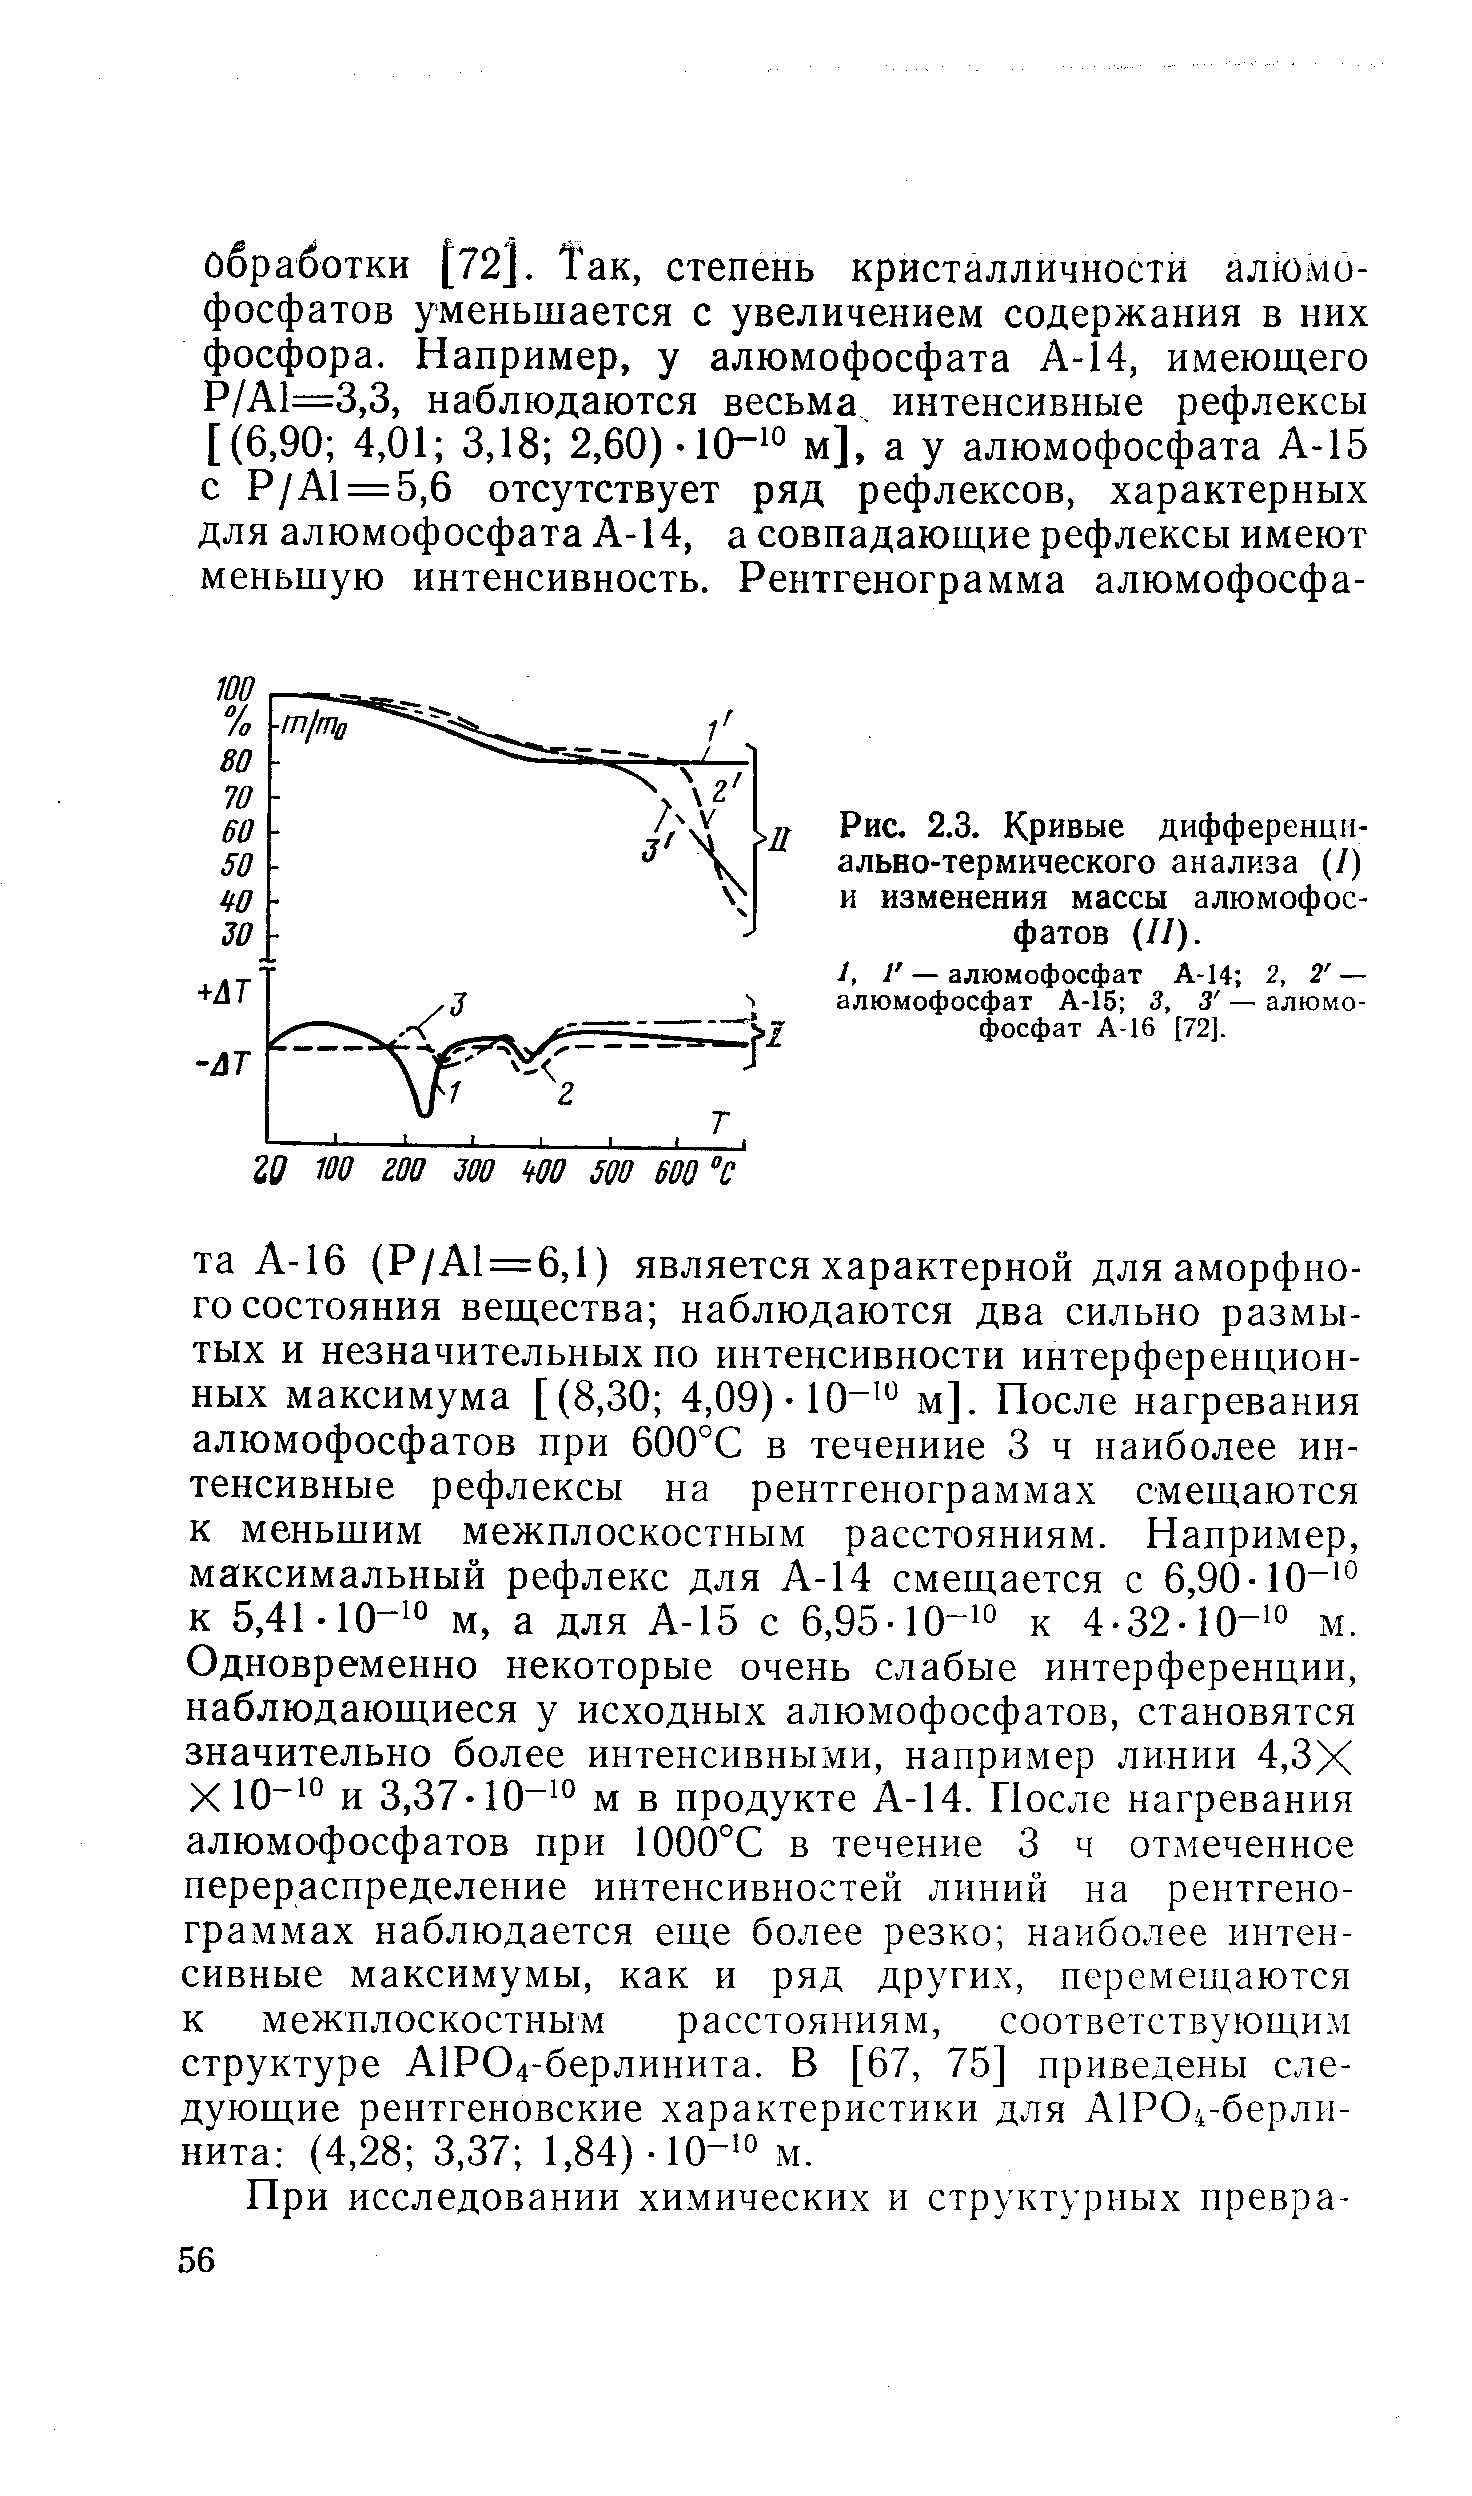 Рис. 2.3. Кривые дифференциально-термического анализа (/) и изменения массы алюмофосфатов (//).
